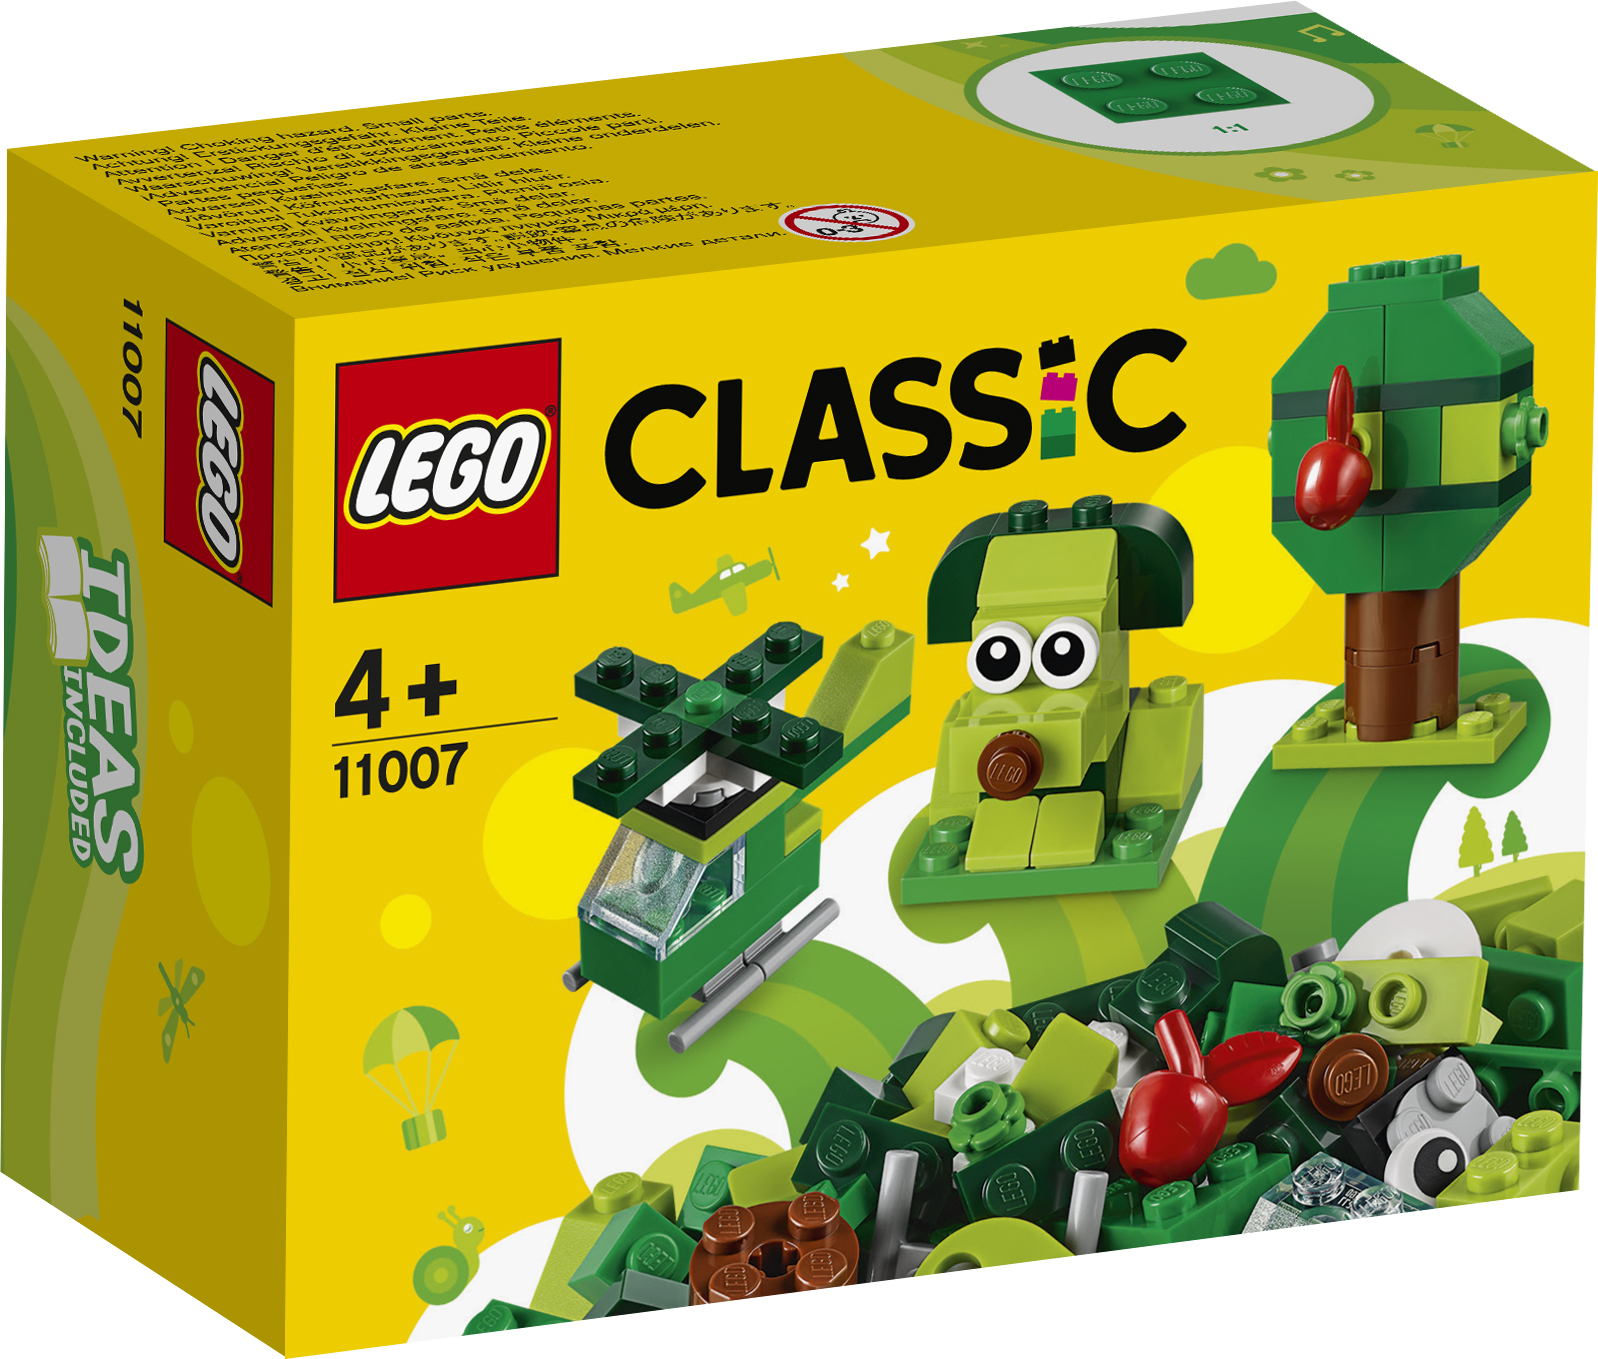  Classic Kreative Grønne Klodser - 11007